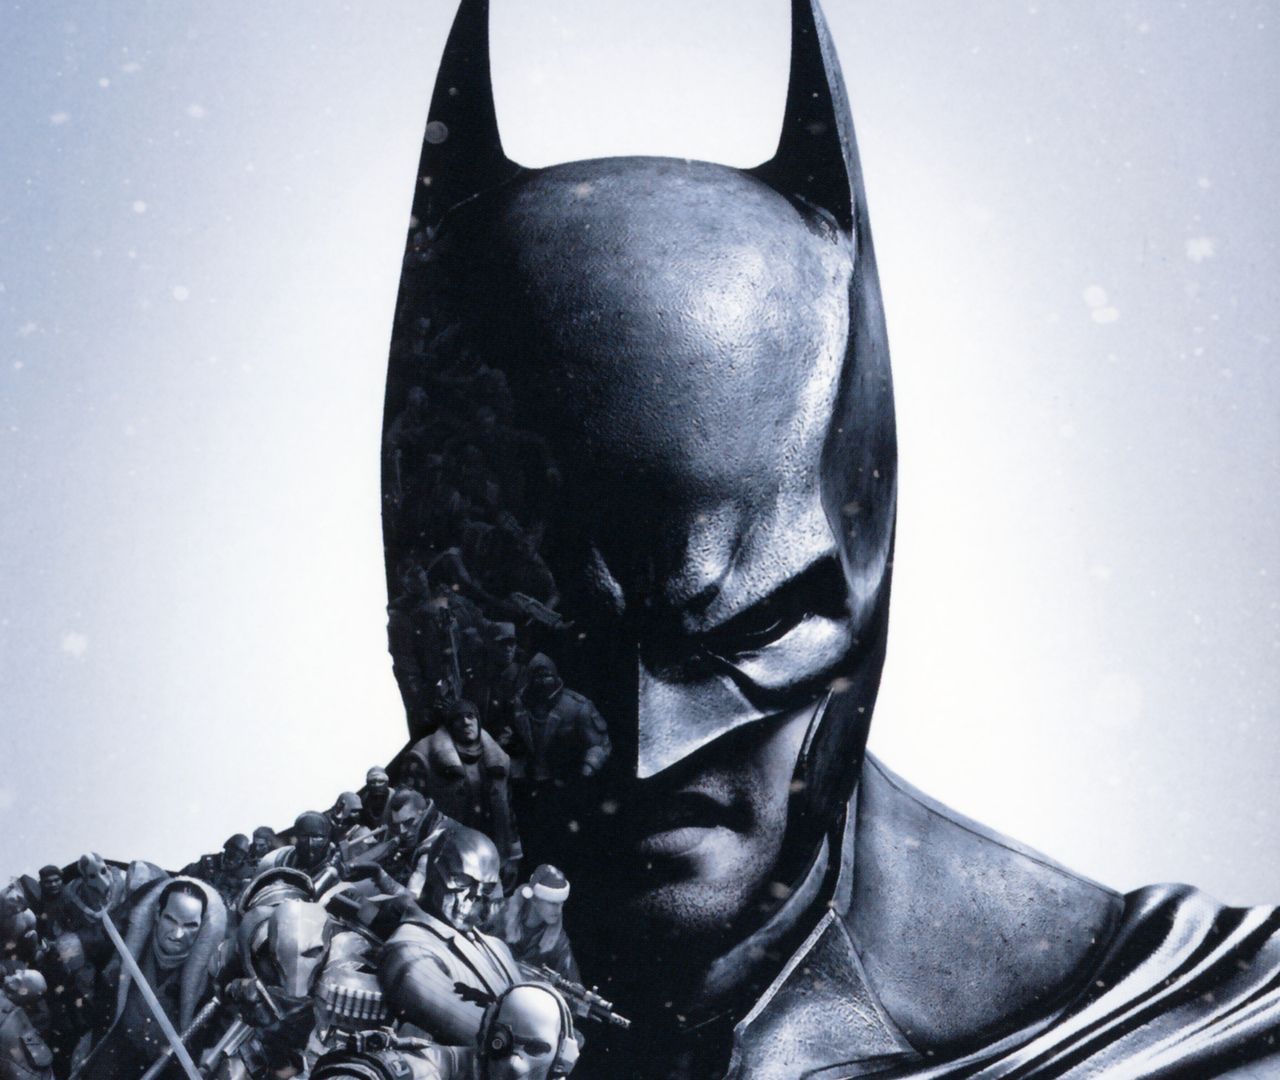 Batman Arkham Origins : Astuces et guides - jeuxvideo.com